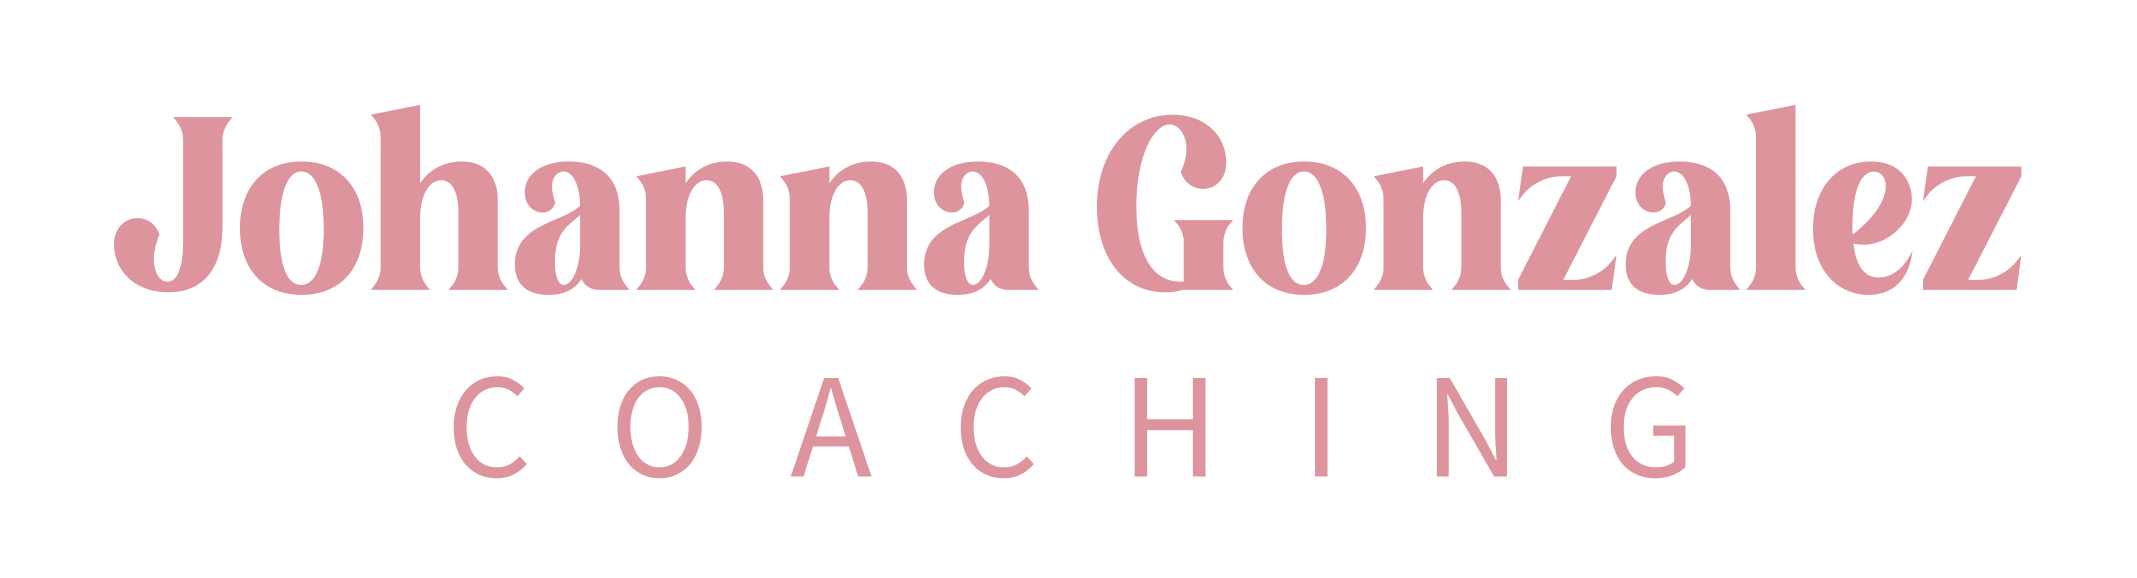 Johanna Gonzalez Coaching - Zestful Media & Design